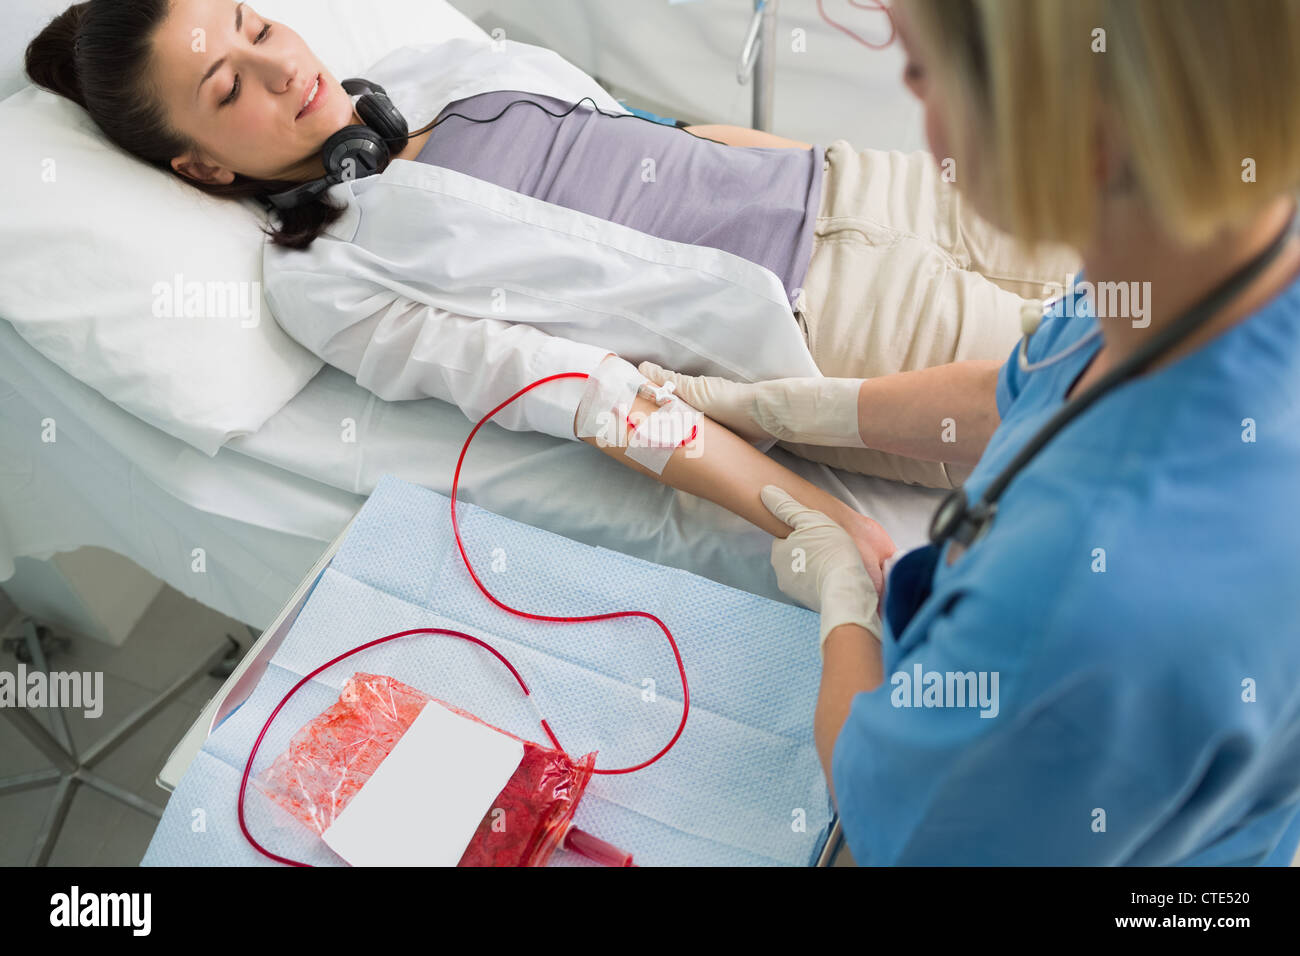 Transfusion Banque d'image et photos - Alamy